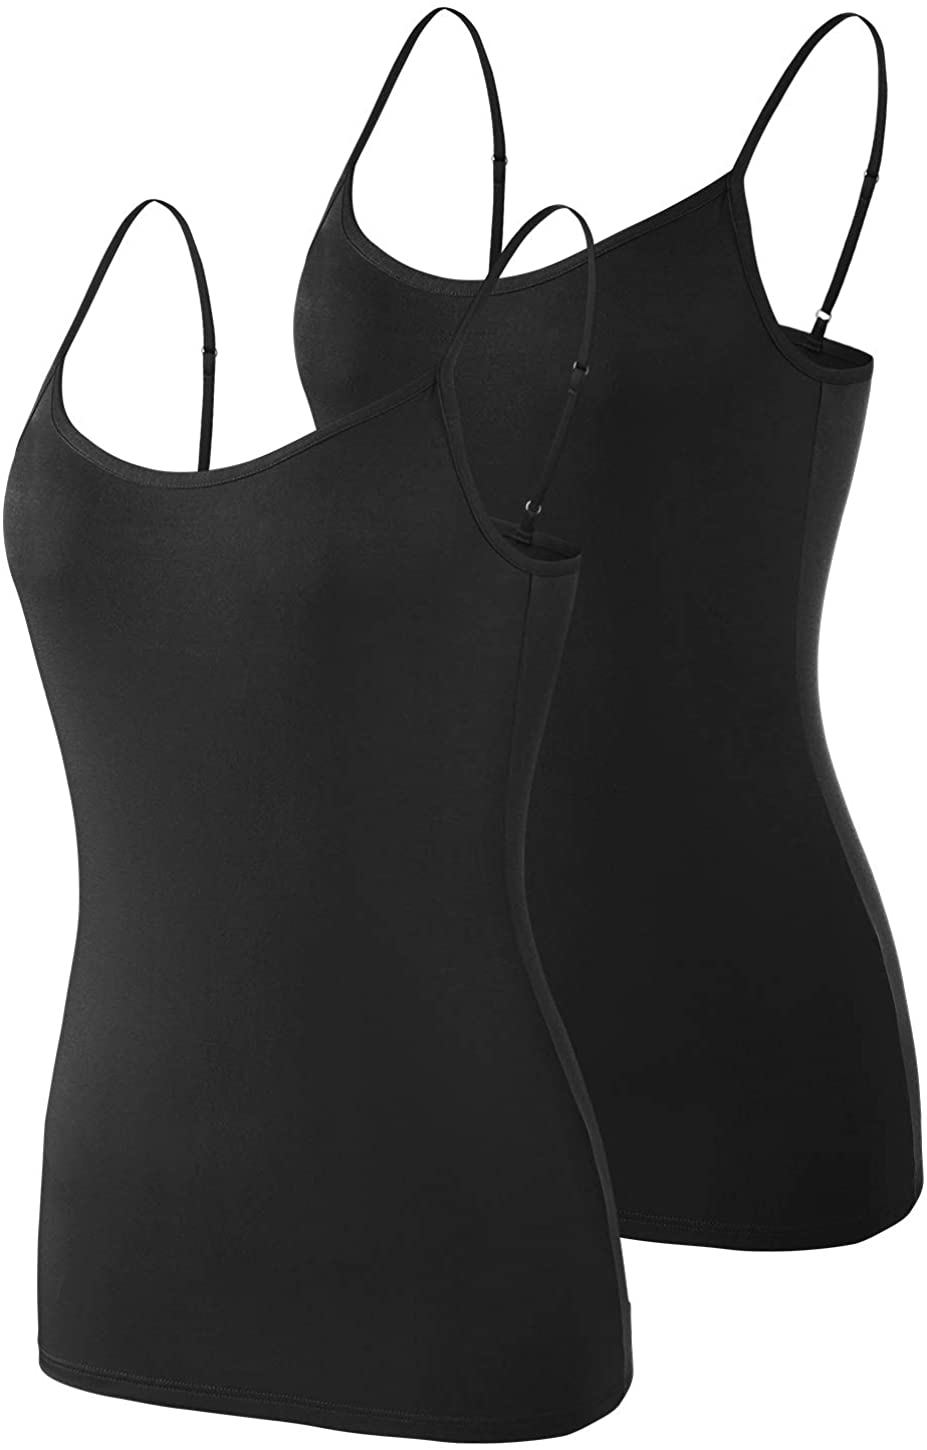 Women's sheathing black tank top  Slimming Camisoles – Virage Mode